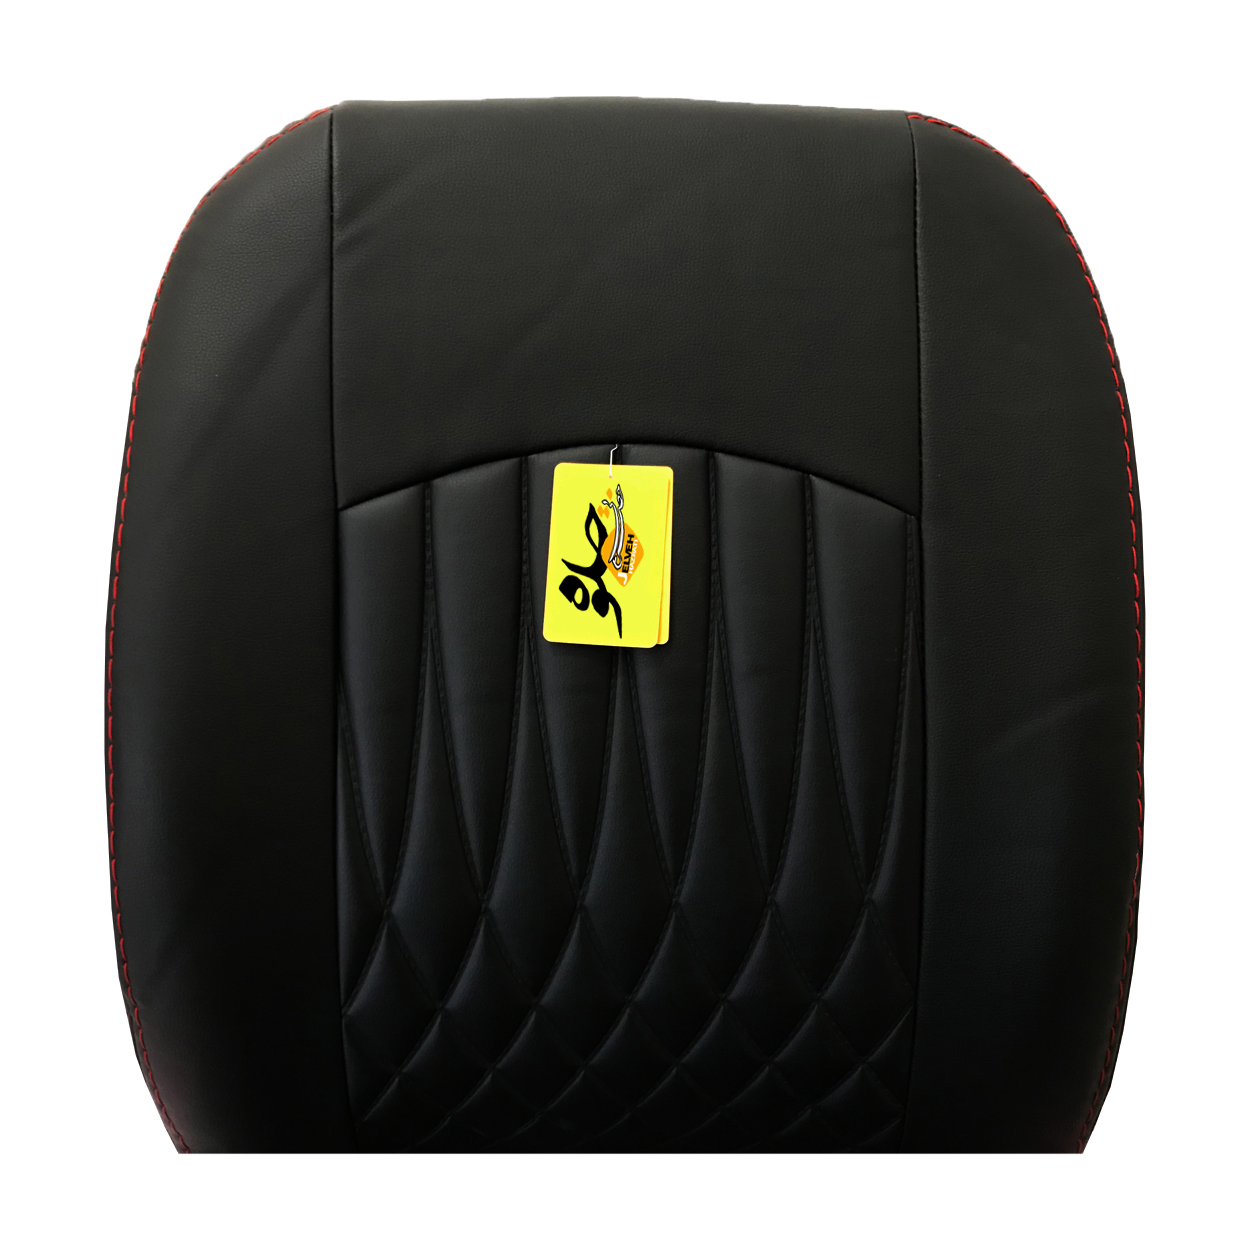 روکش صندلی خودرو جلوه مدل BG12 مناسب برای دانگ فنگ H30 کراس